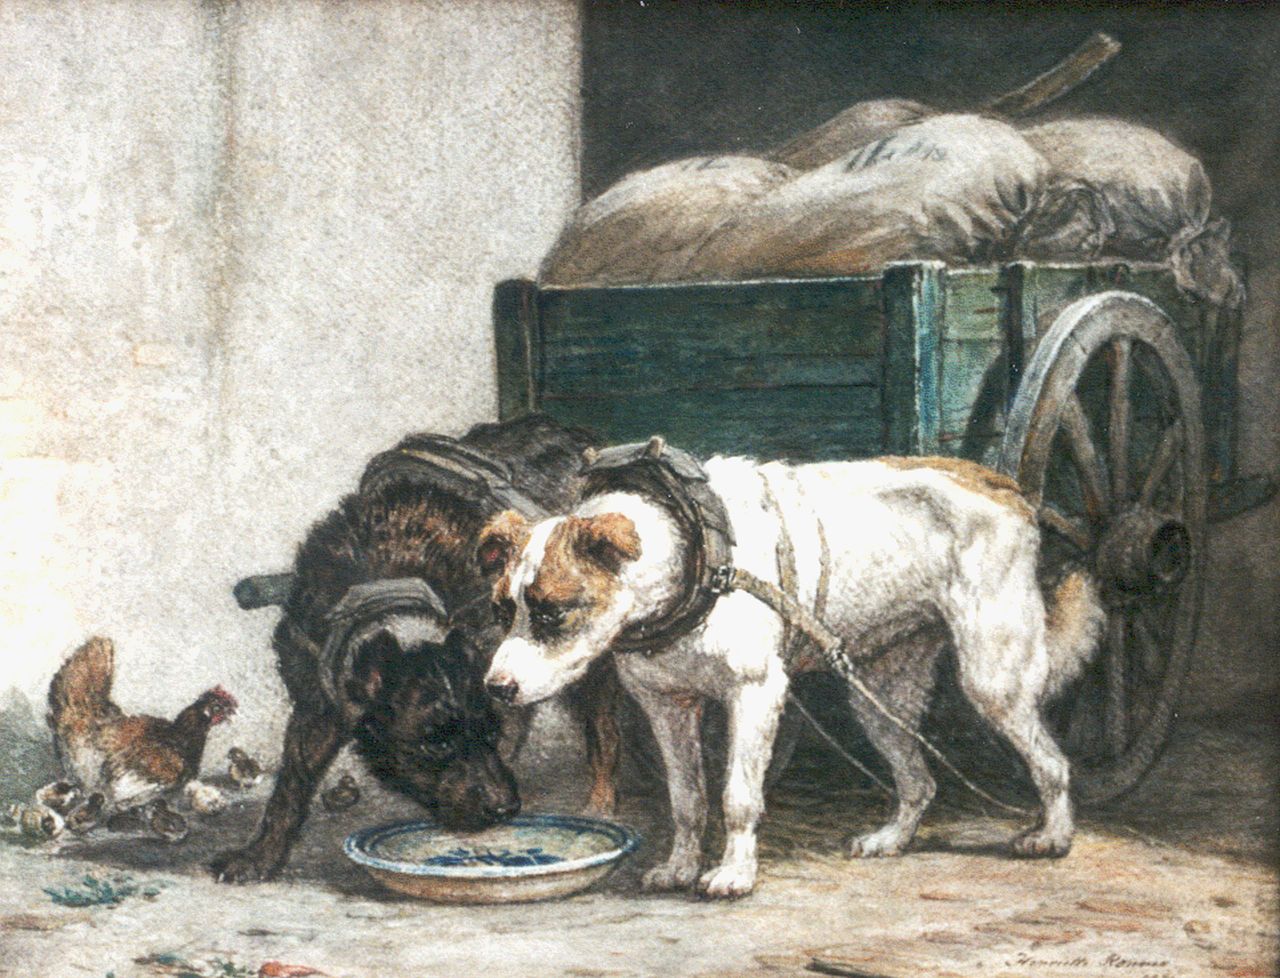 Ronner-Knip H.  | Henriette Ronner-Knip, Rustende trekhonden, aquarel op papier 35,0 x 44,5 cm, gesigneerd rechtsonder en gedateerd 1871